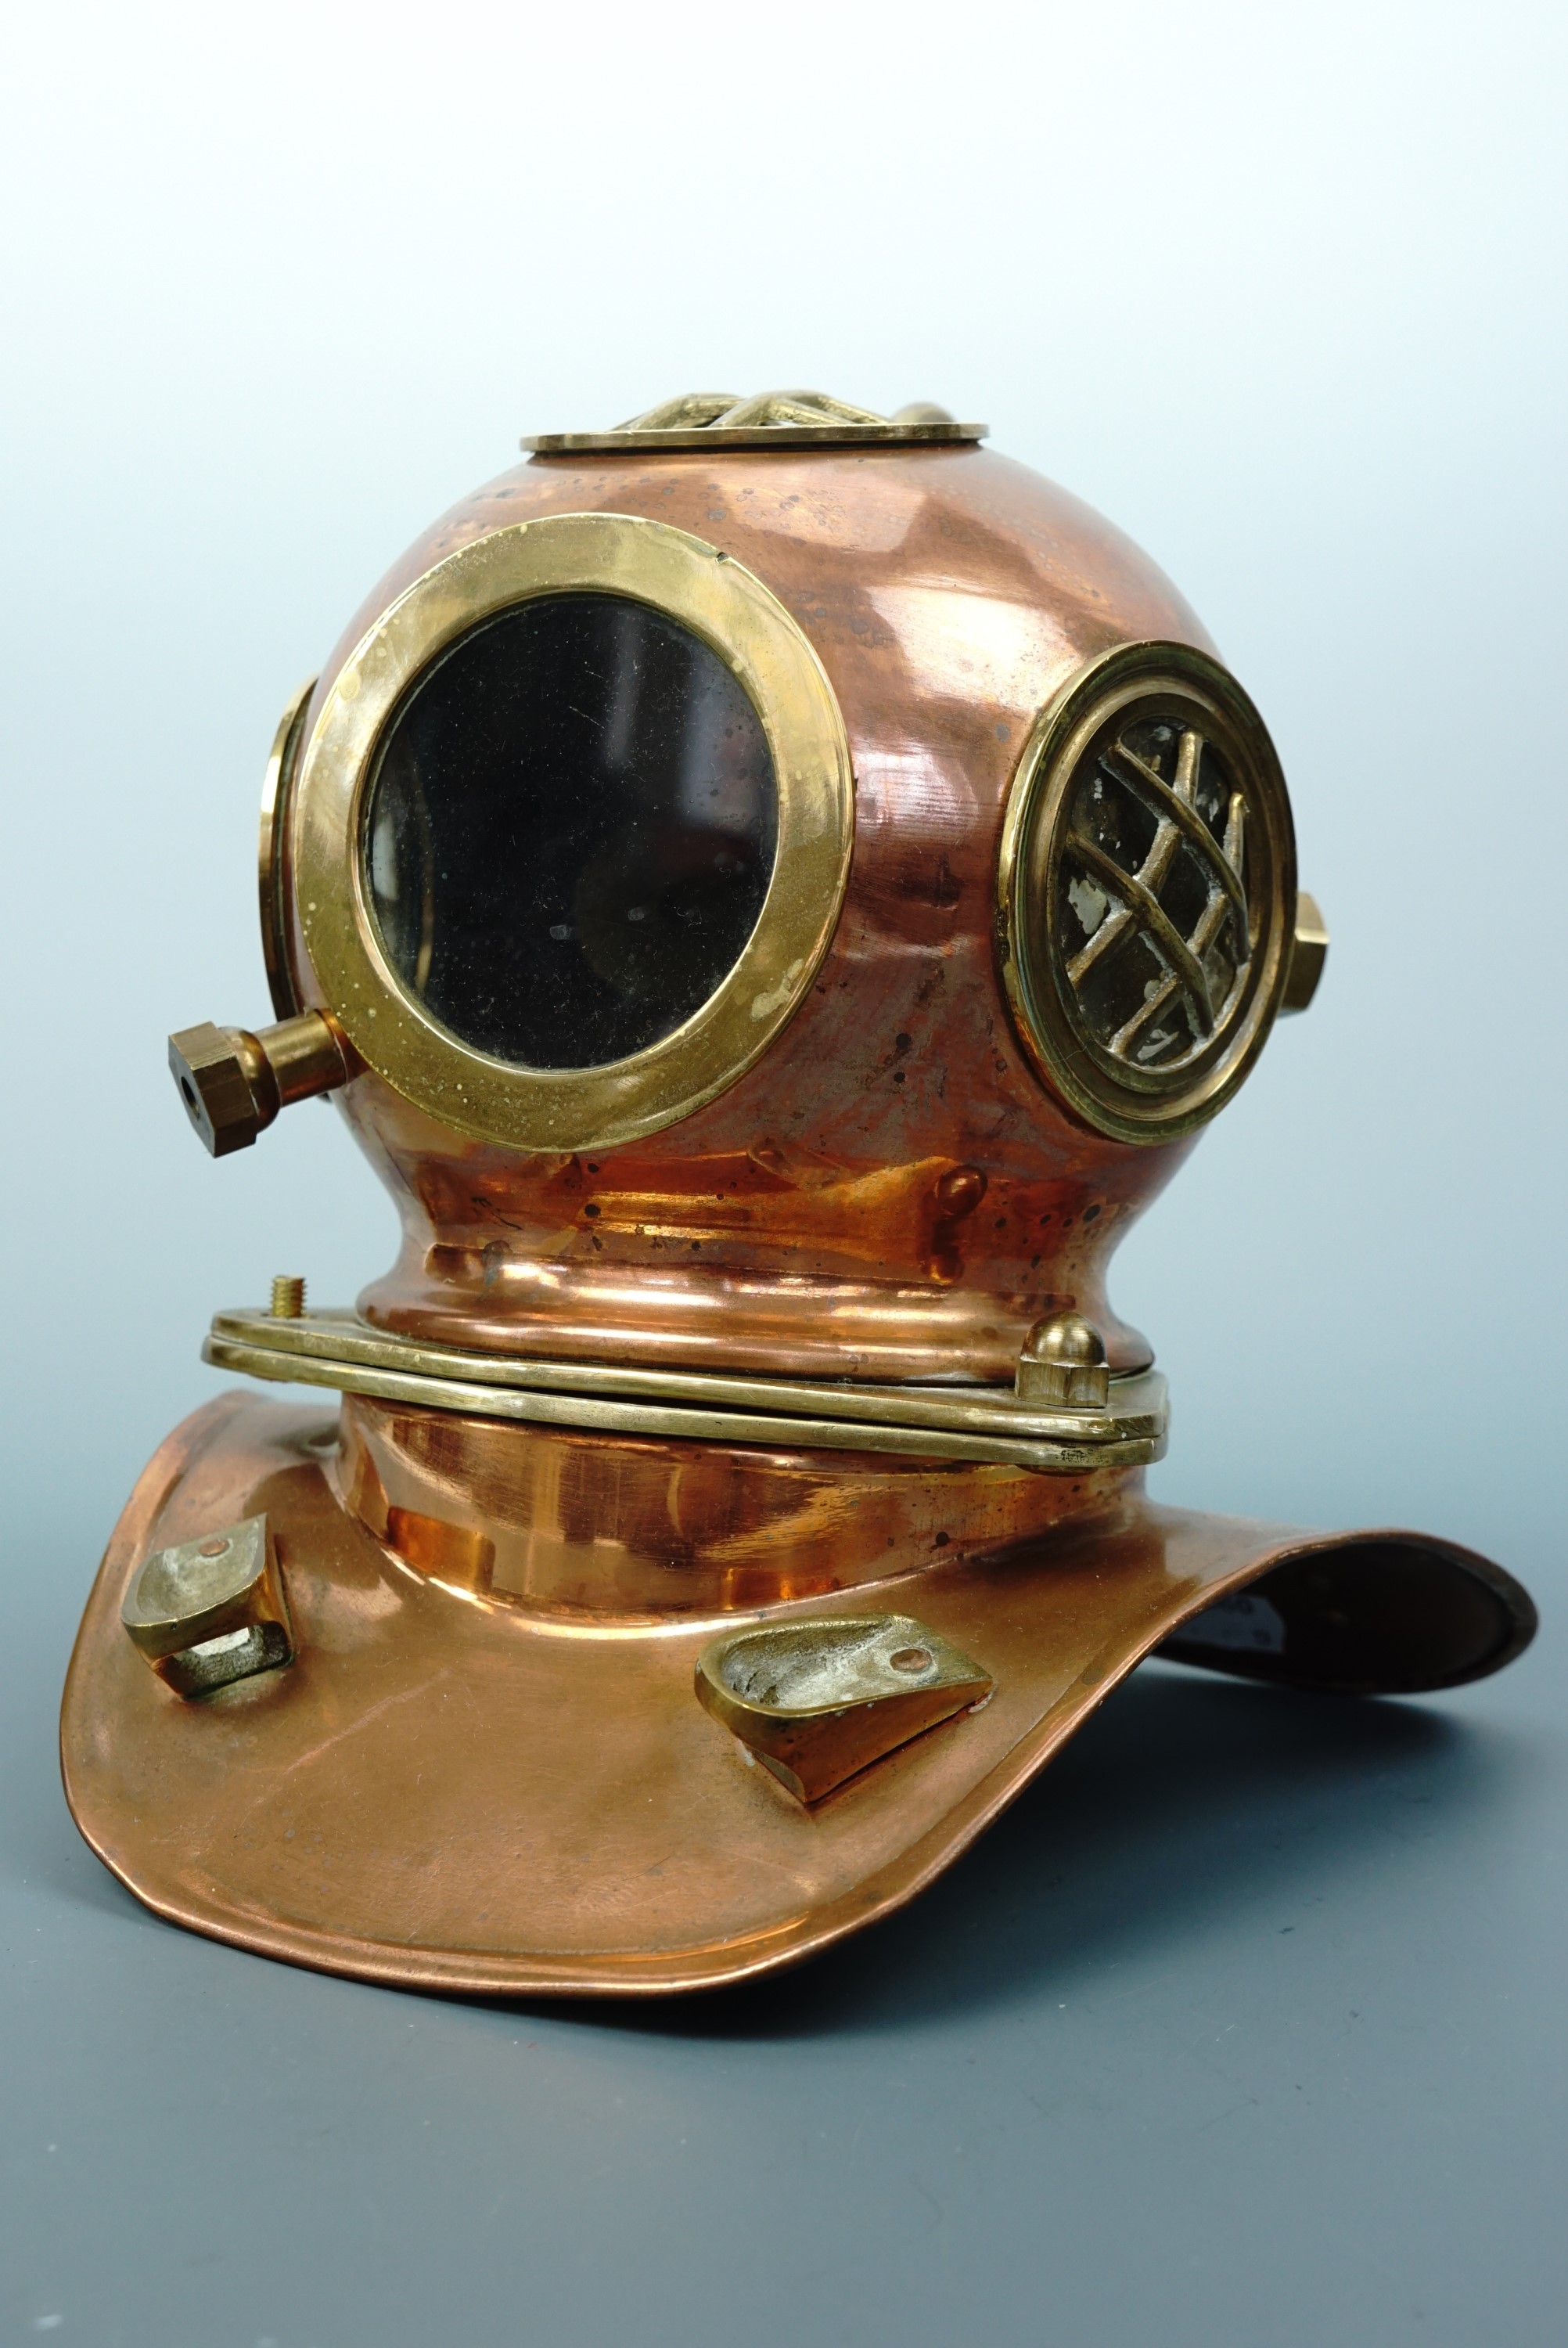 A miniature brass diver's helmet, 20 cm high